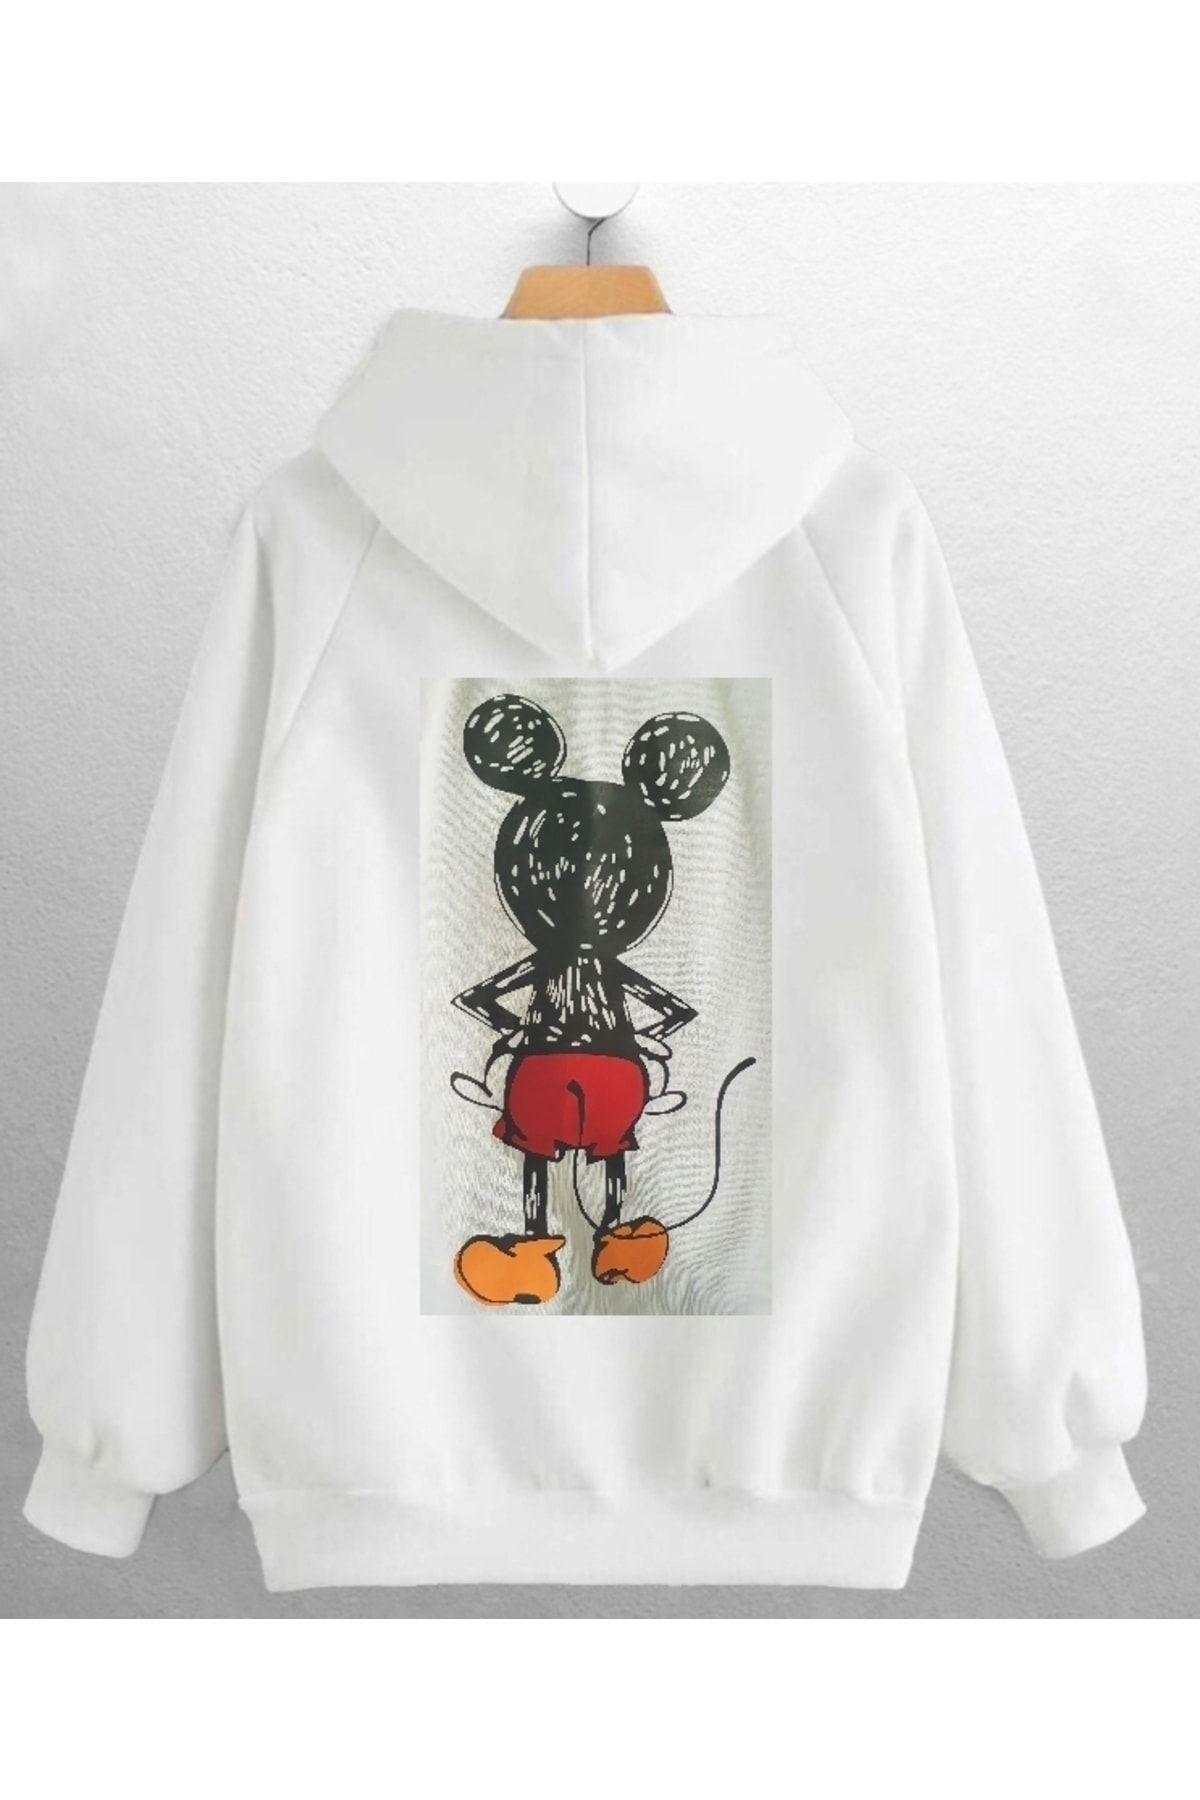 ELSİ Beyaz Kapüşonlu Sweatshirt Kapşonlu Minnie Mouse